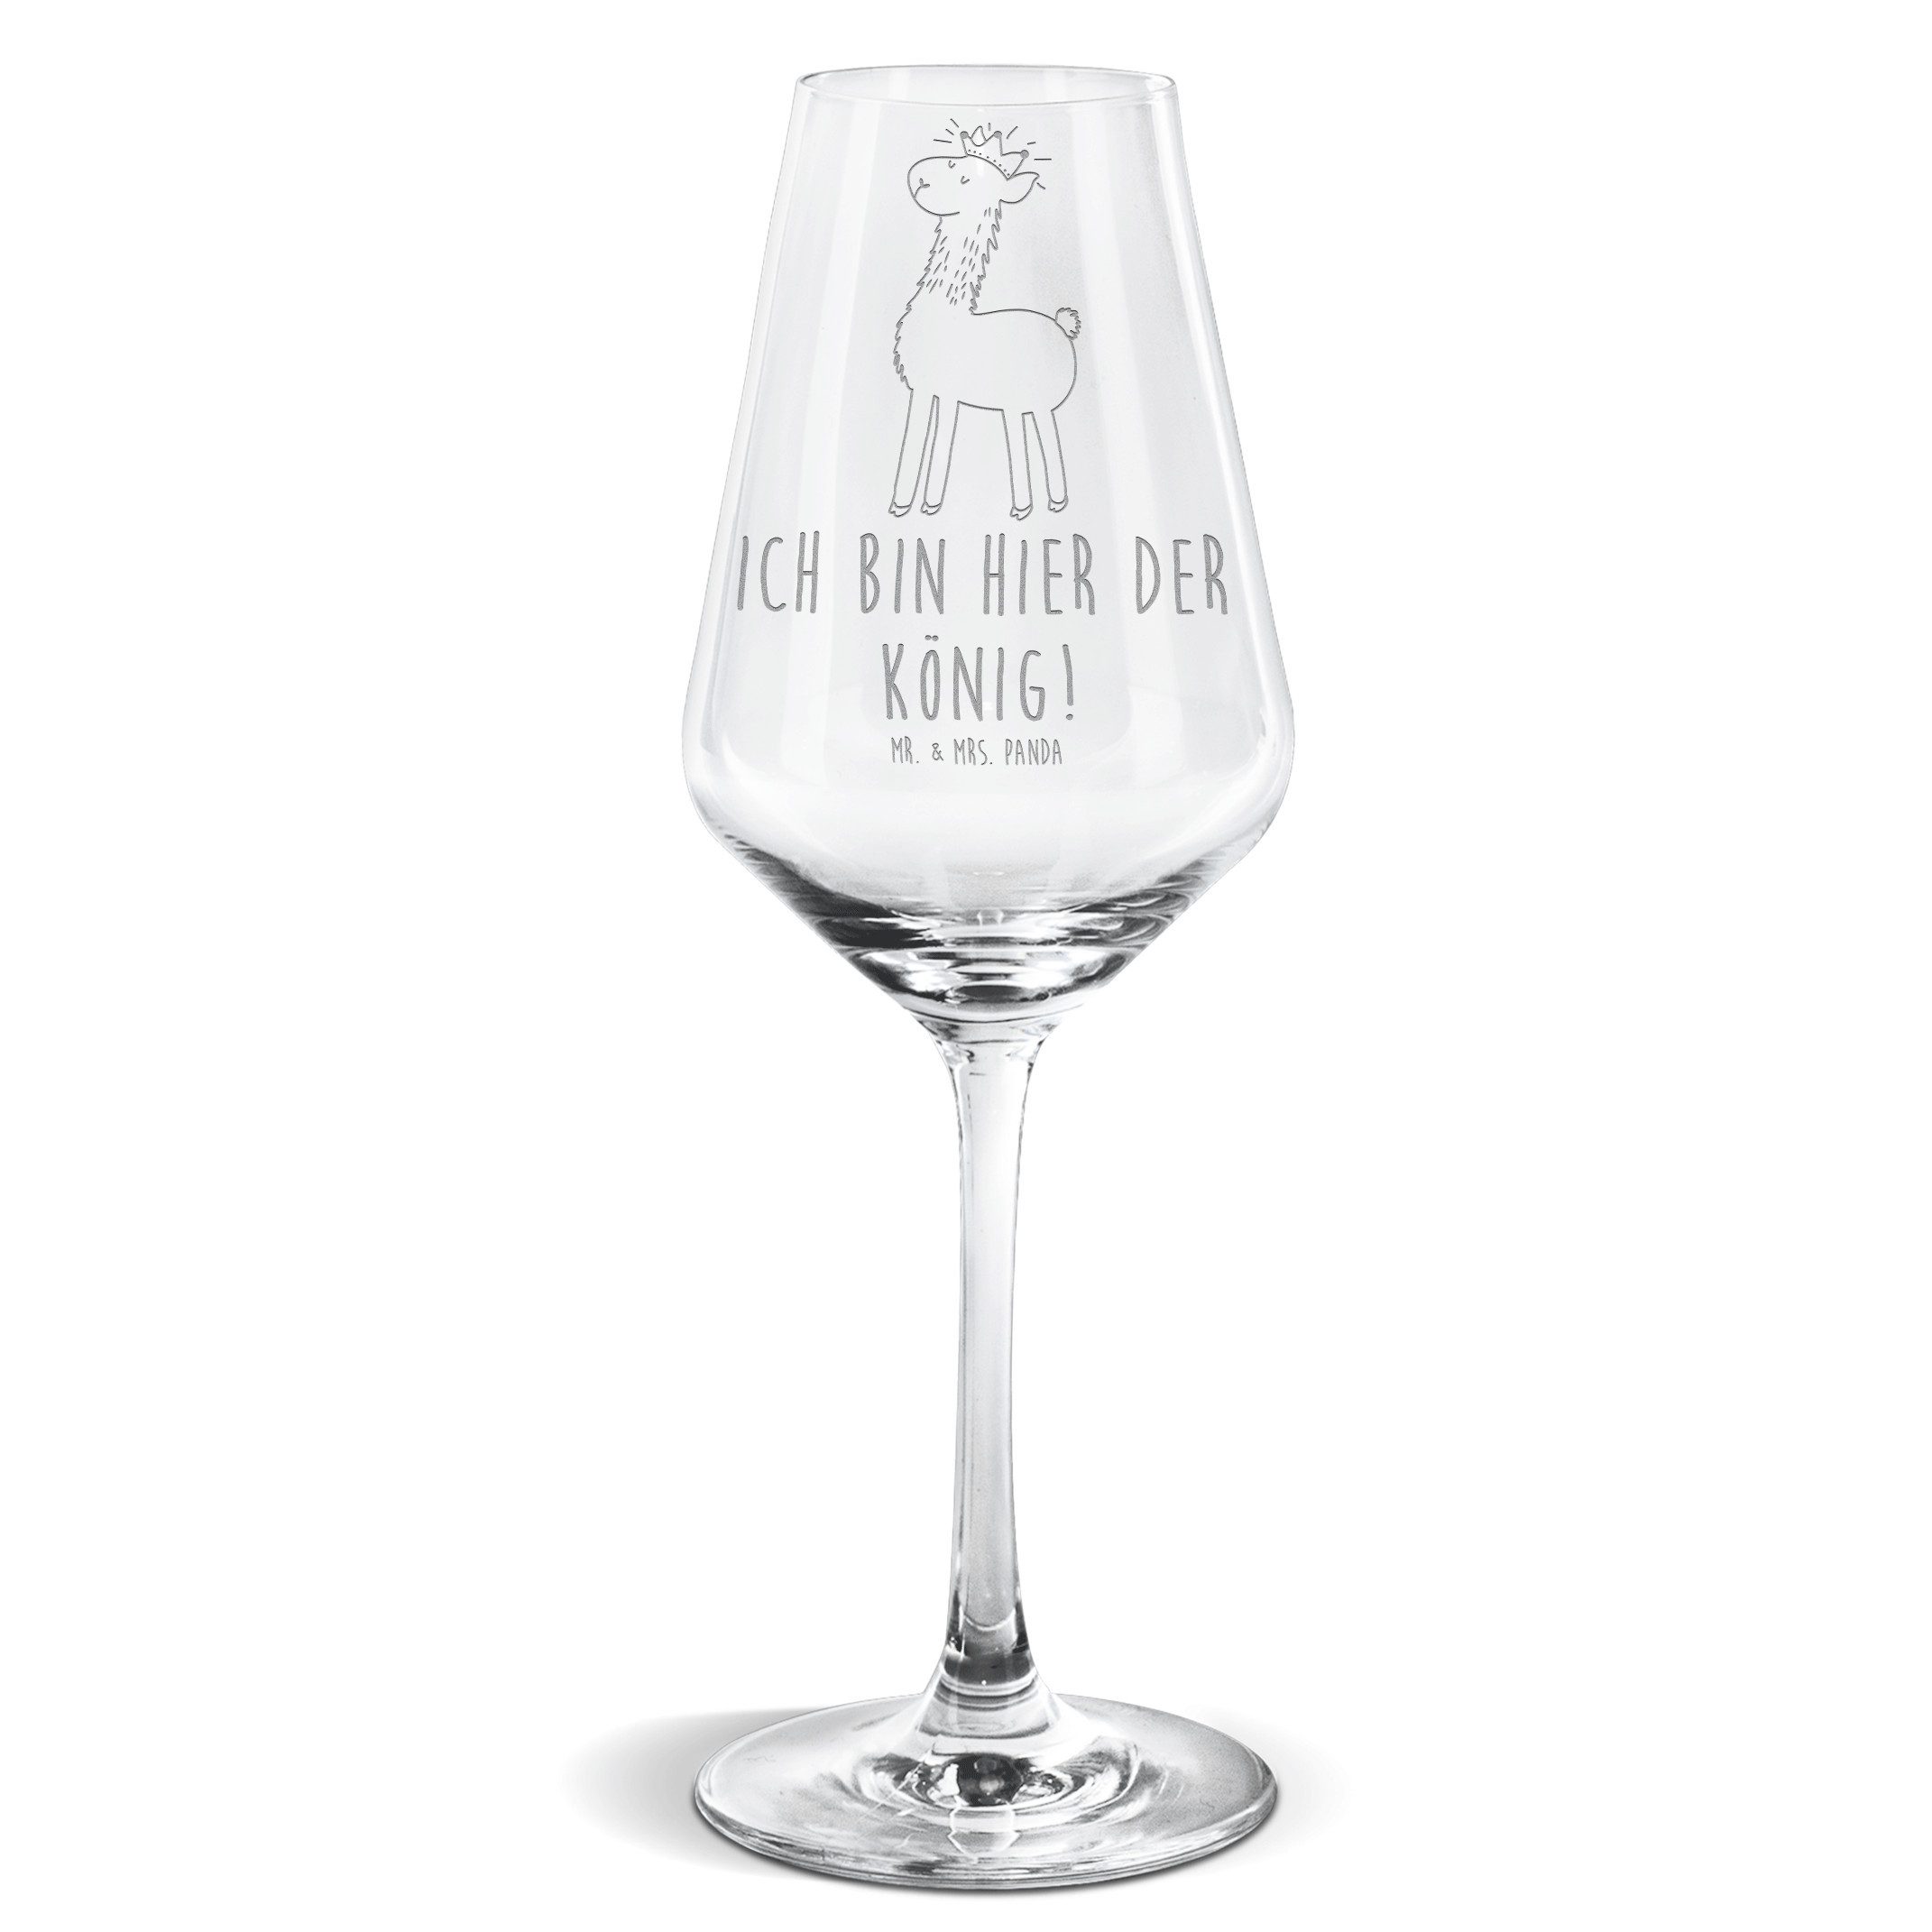 Mr. & Mrs. Panda Weißweinglas Lama König - Transparent - Geschenk, Hochwertige Weinaccessoires, Ges, Premium Glas, Exklusives Design